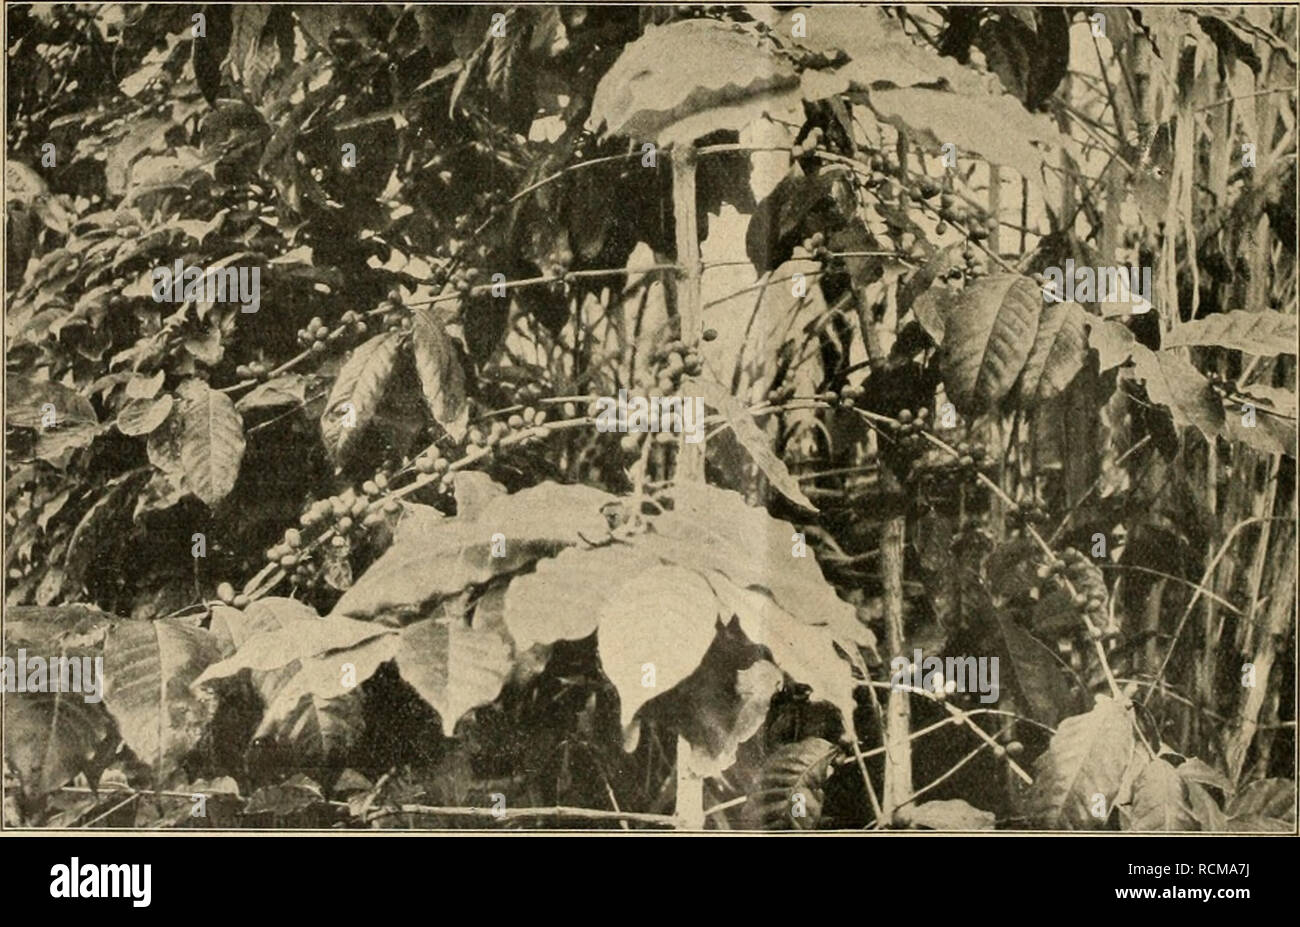 . Die Gartenwelt. Gardening. 456 Die Gartenwelt. XVIII, 34 baren Blüten die leuchtende Farbe fehlt, die Insekten zum Besuch zu verlocken, lassen sie denselben einen starken Duft entströmen. Und wegen dieses Wohlgeruches verdienen manche Winterblüher alle Beachtung. Die hier am meisten angepflanzten sind eiwa die folgenden: Buddleia asiatica Lour., von den Malayen stammend, formt einen hübschen, eleganten Strauch von l'a bis 2 m Höhe; die Zweige sind weichholzig, mit dickem Mark, daher leicht hängend oder rankend. Blätter oben schön grün, unten weißglänzend, bis 10 cm lang und 2 cm breit, gesti Stock Photo